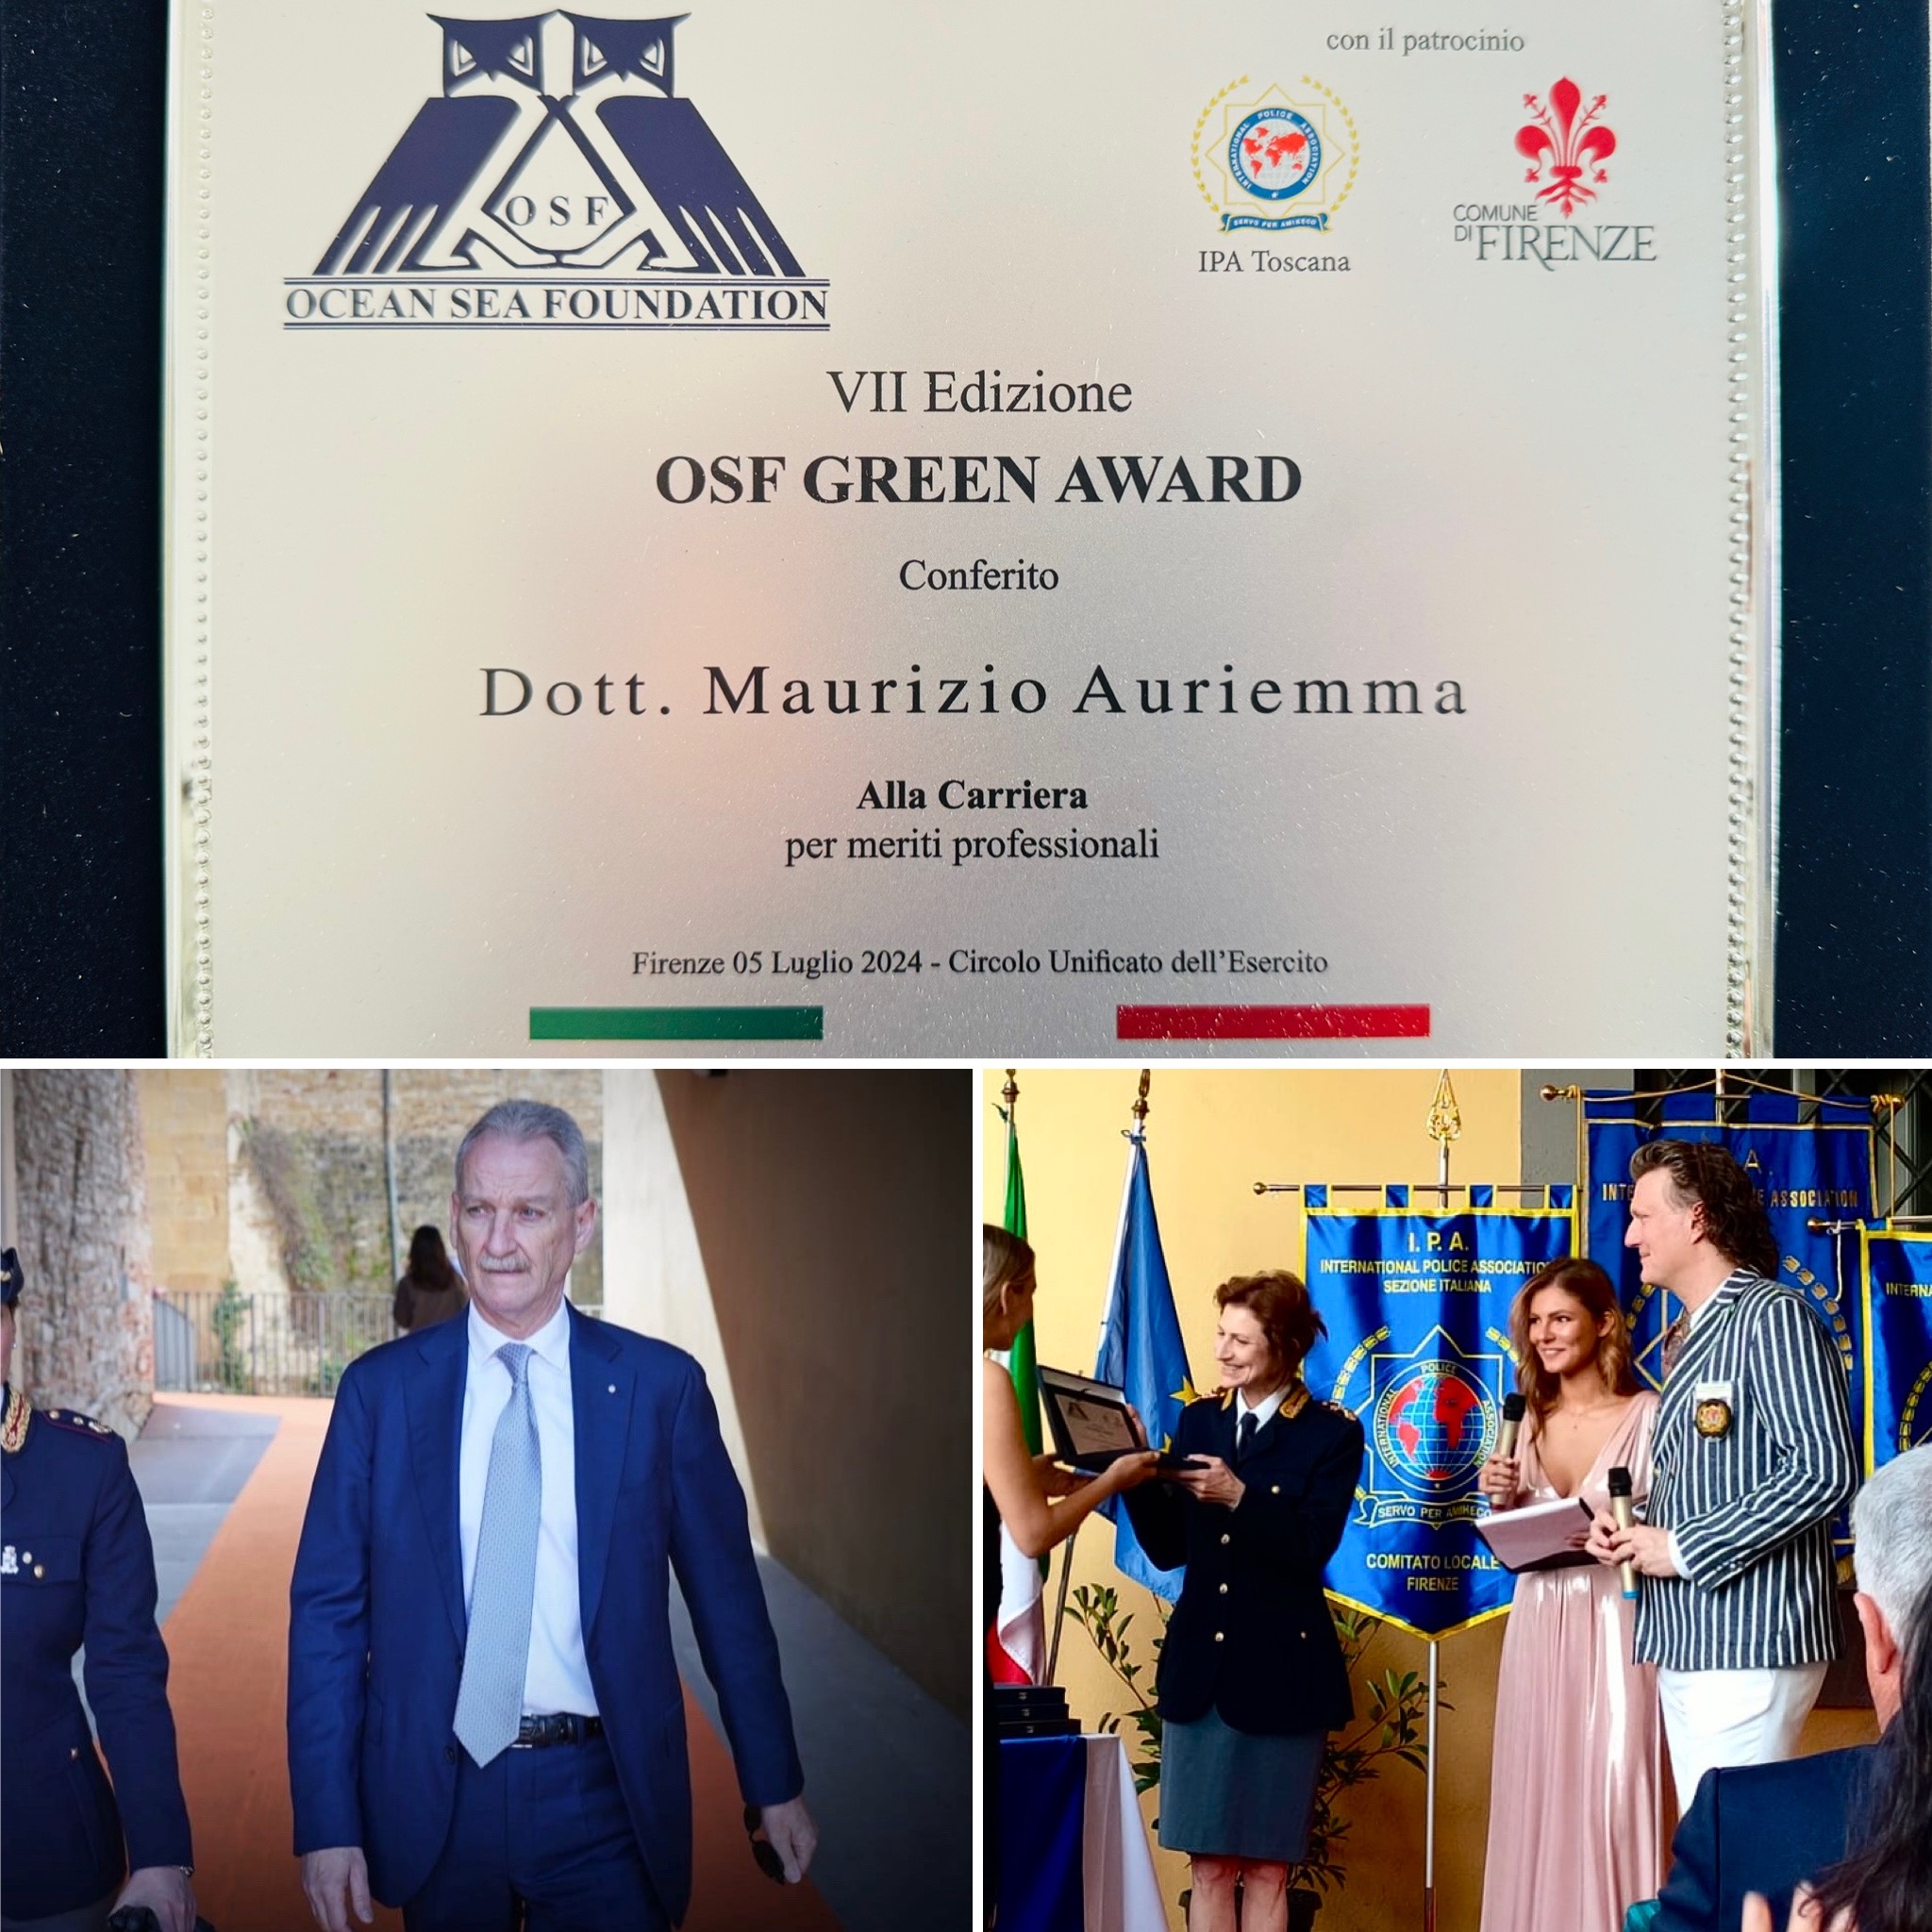 Il Questore della provincia di Firenze Maurizio Auriemma riceve il premio OSF GREEN AWARD conferito alla carriera per meriti professionali